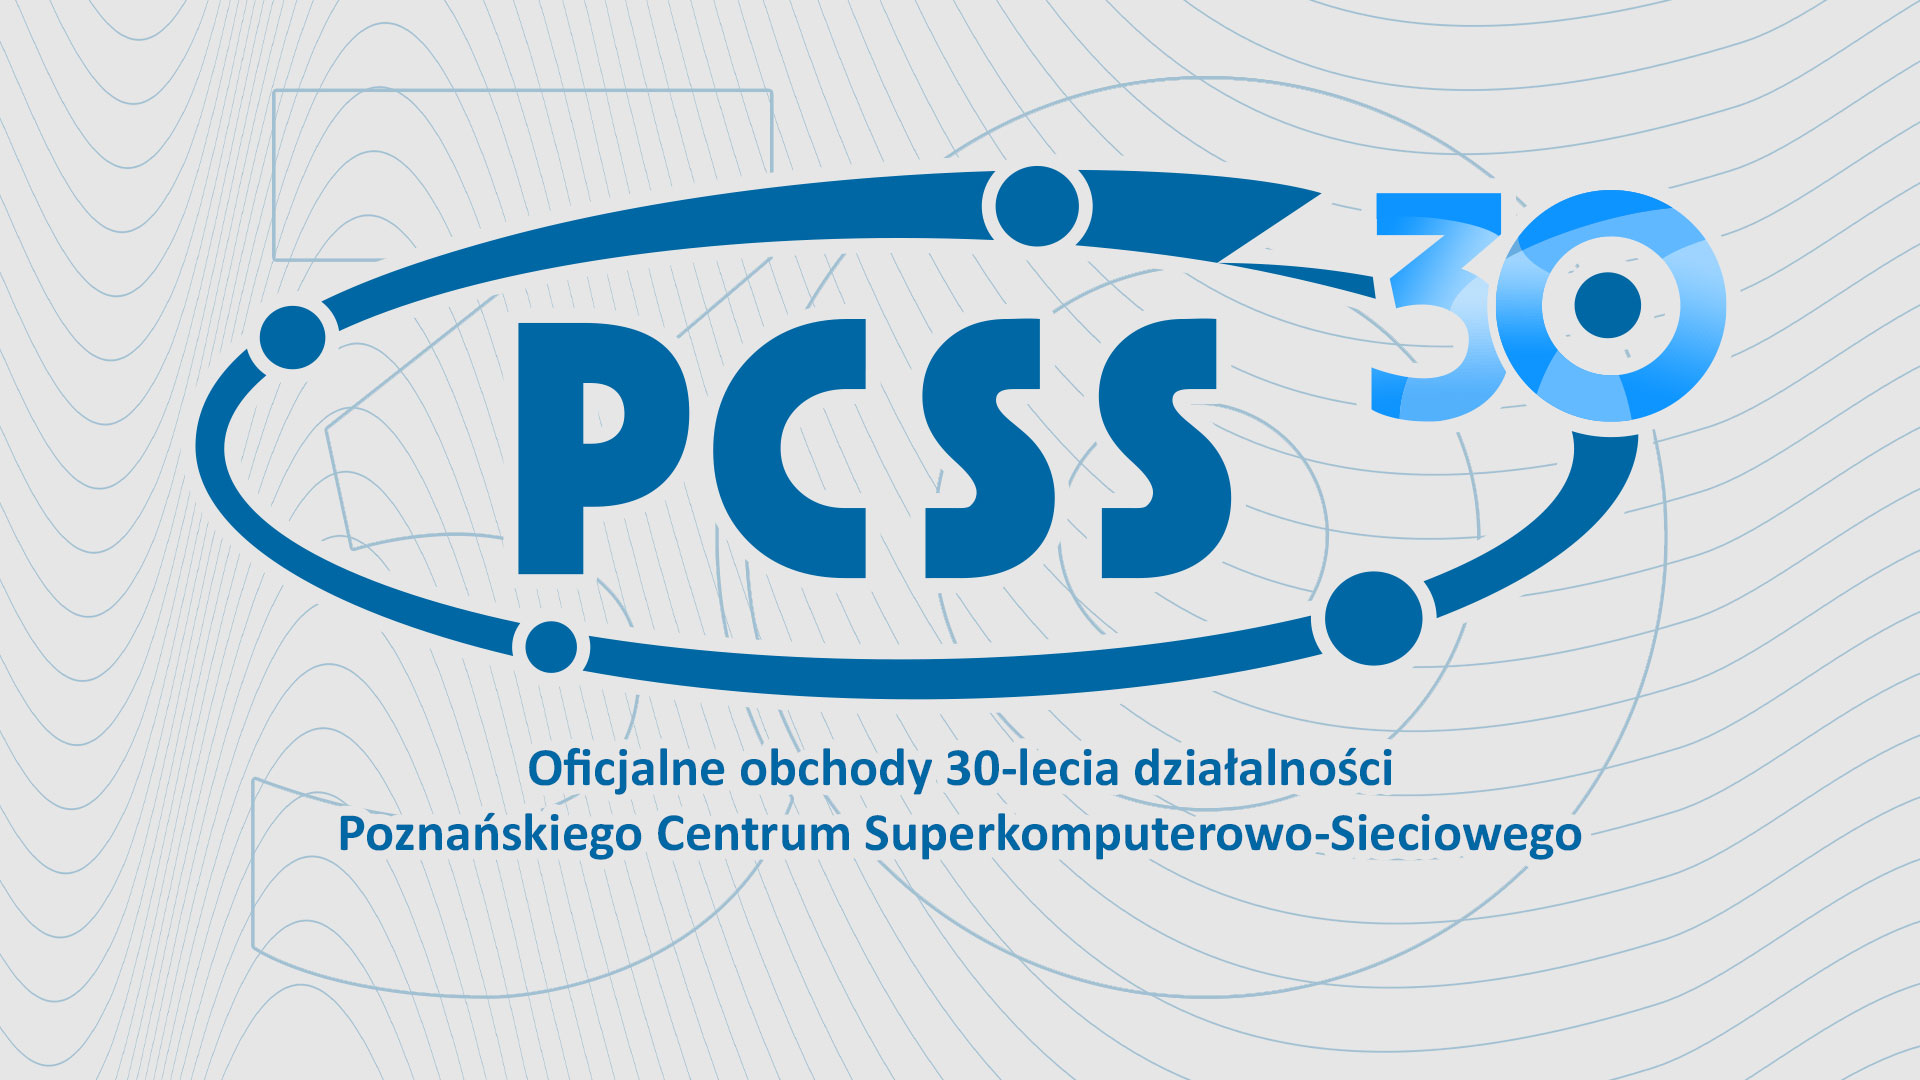 30-lecie Poznańskiego Centrum Superkomputerowo-Sieciowego